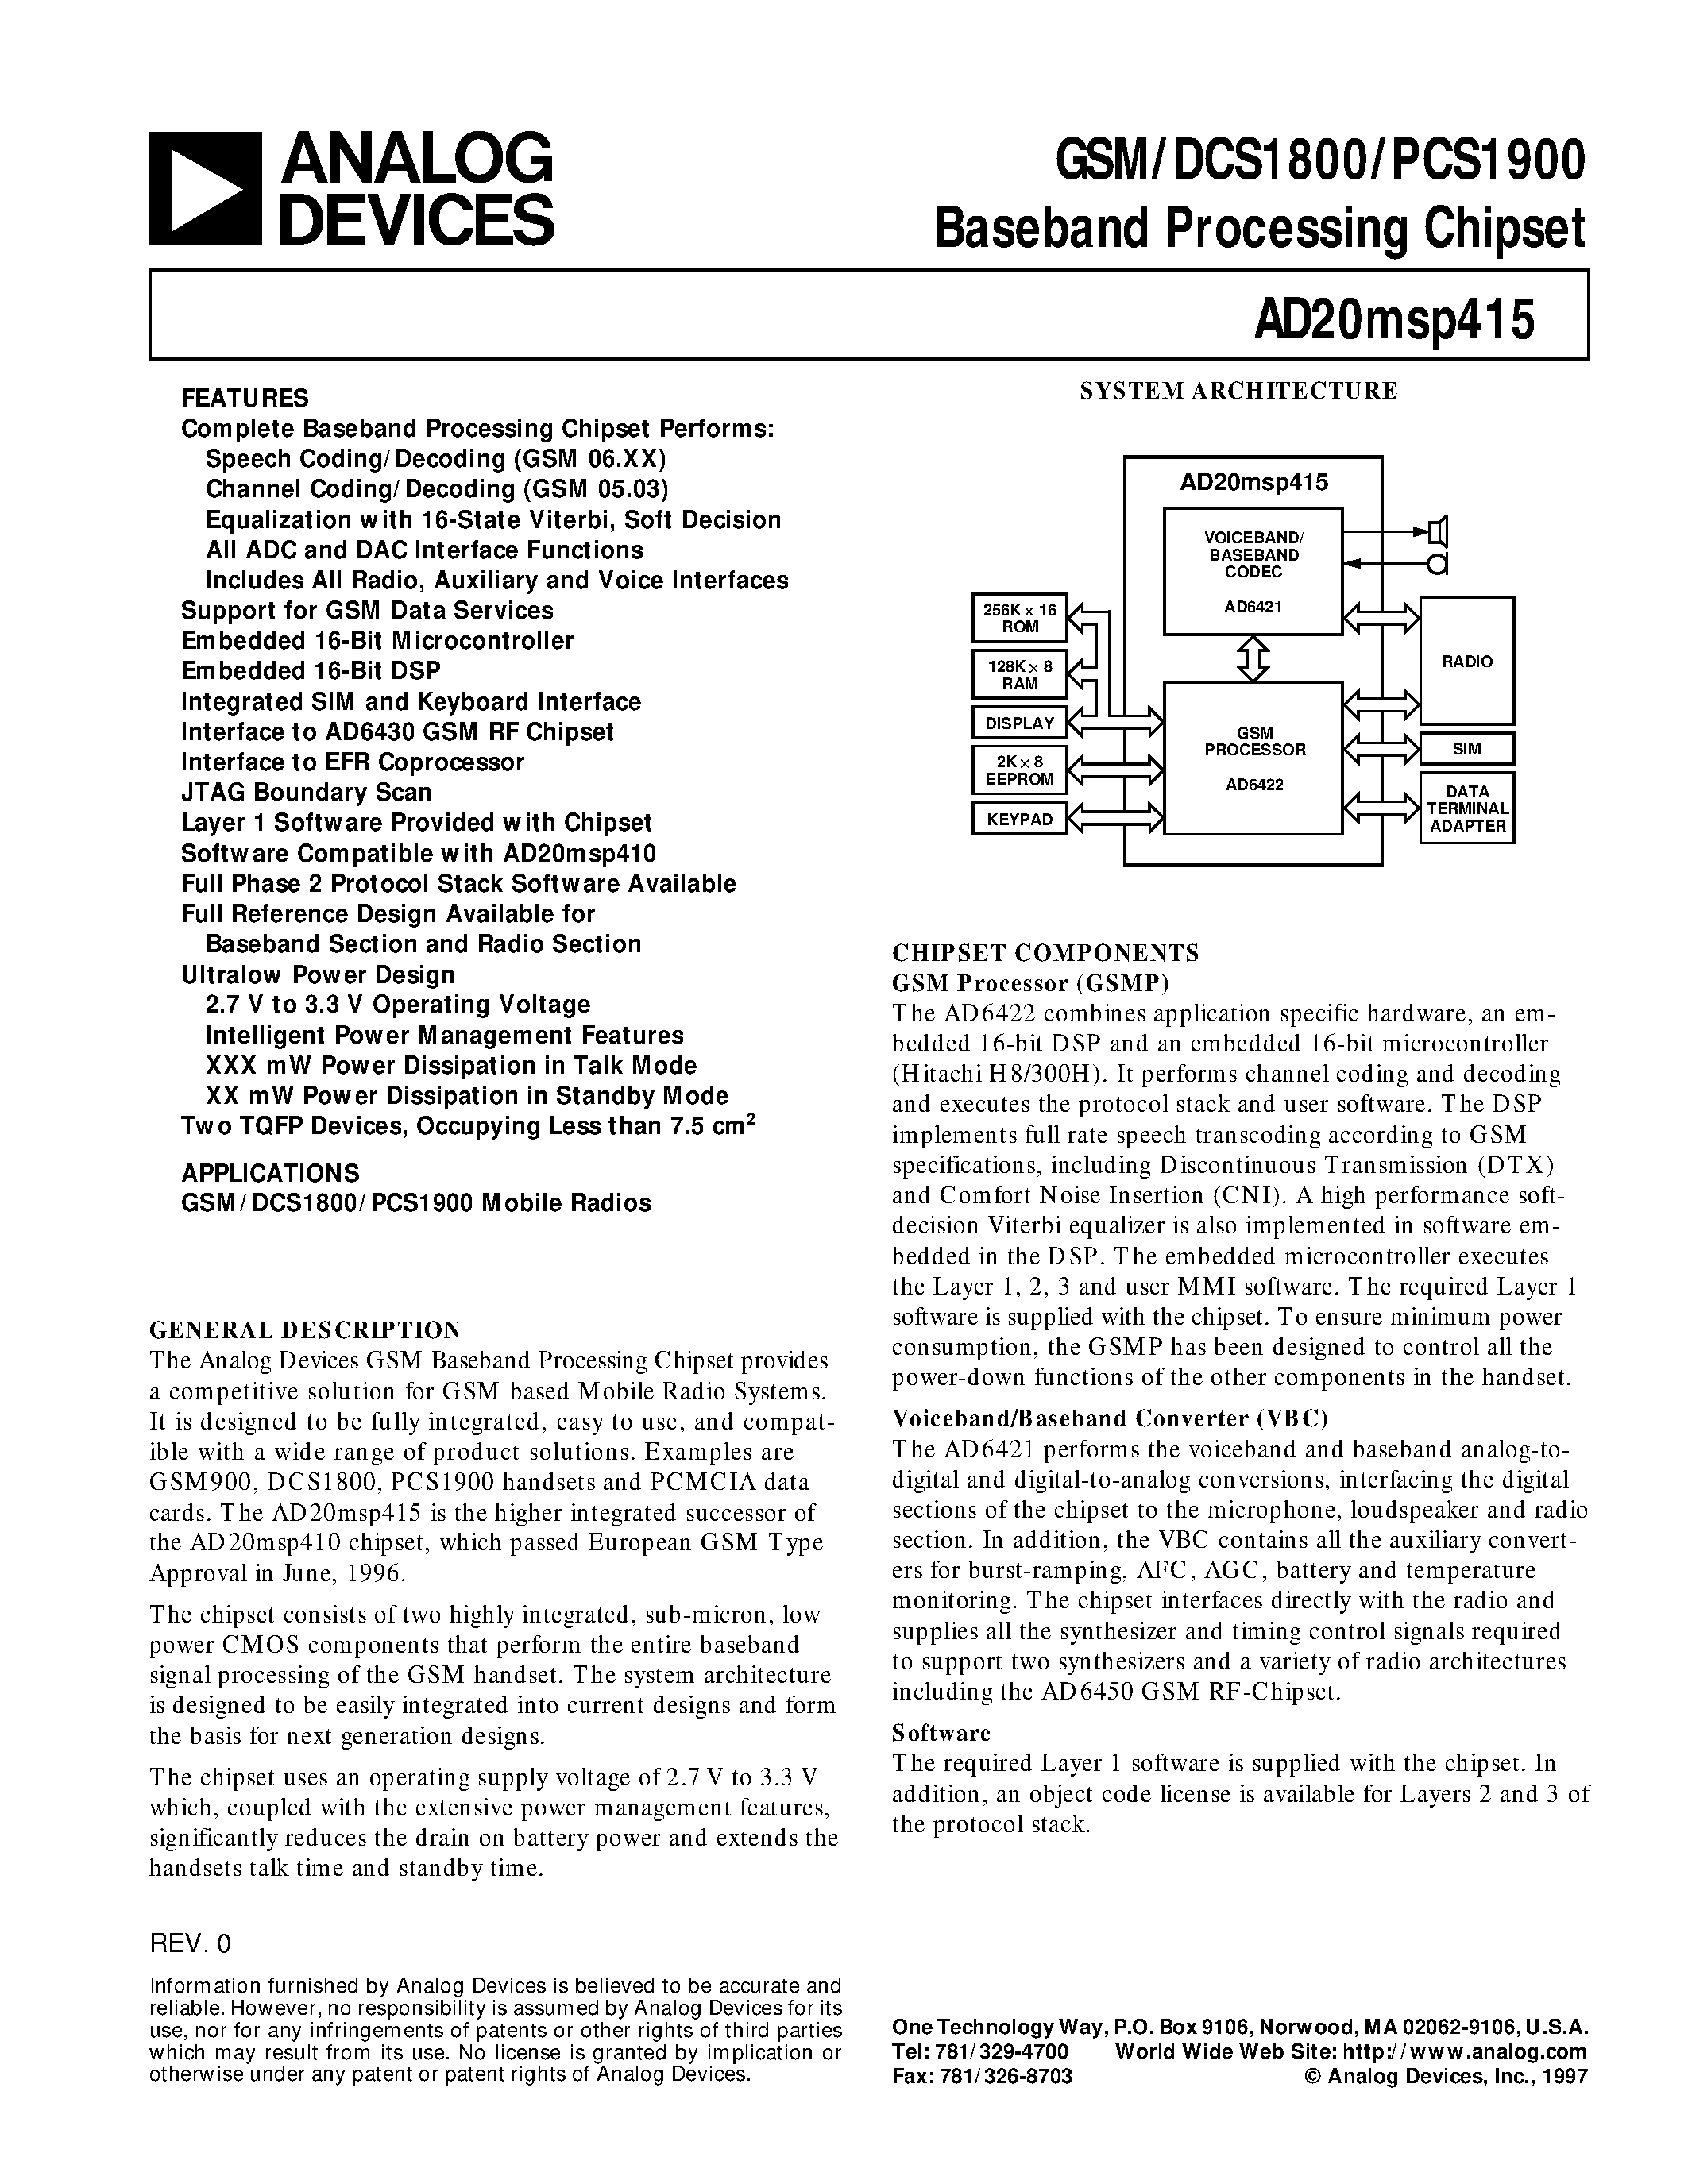 Даташит AD20MSP415 - GSM/DCS1800/PCS1900 Baseband Processing Chipset страница 1